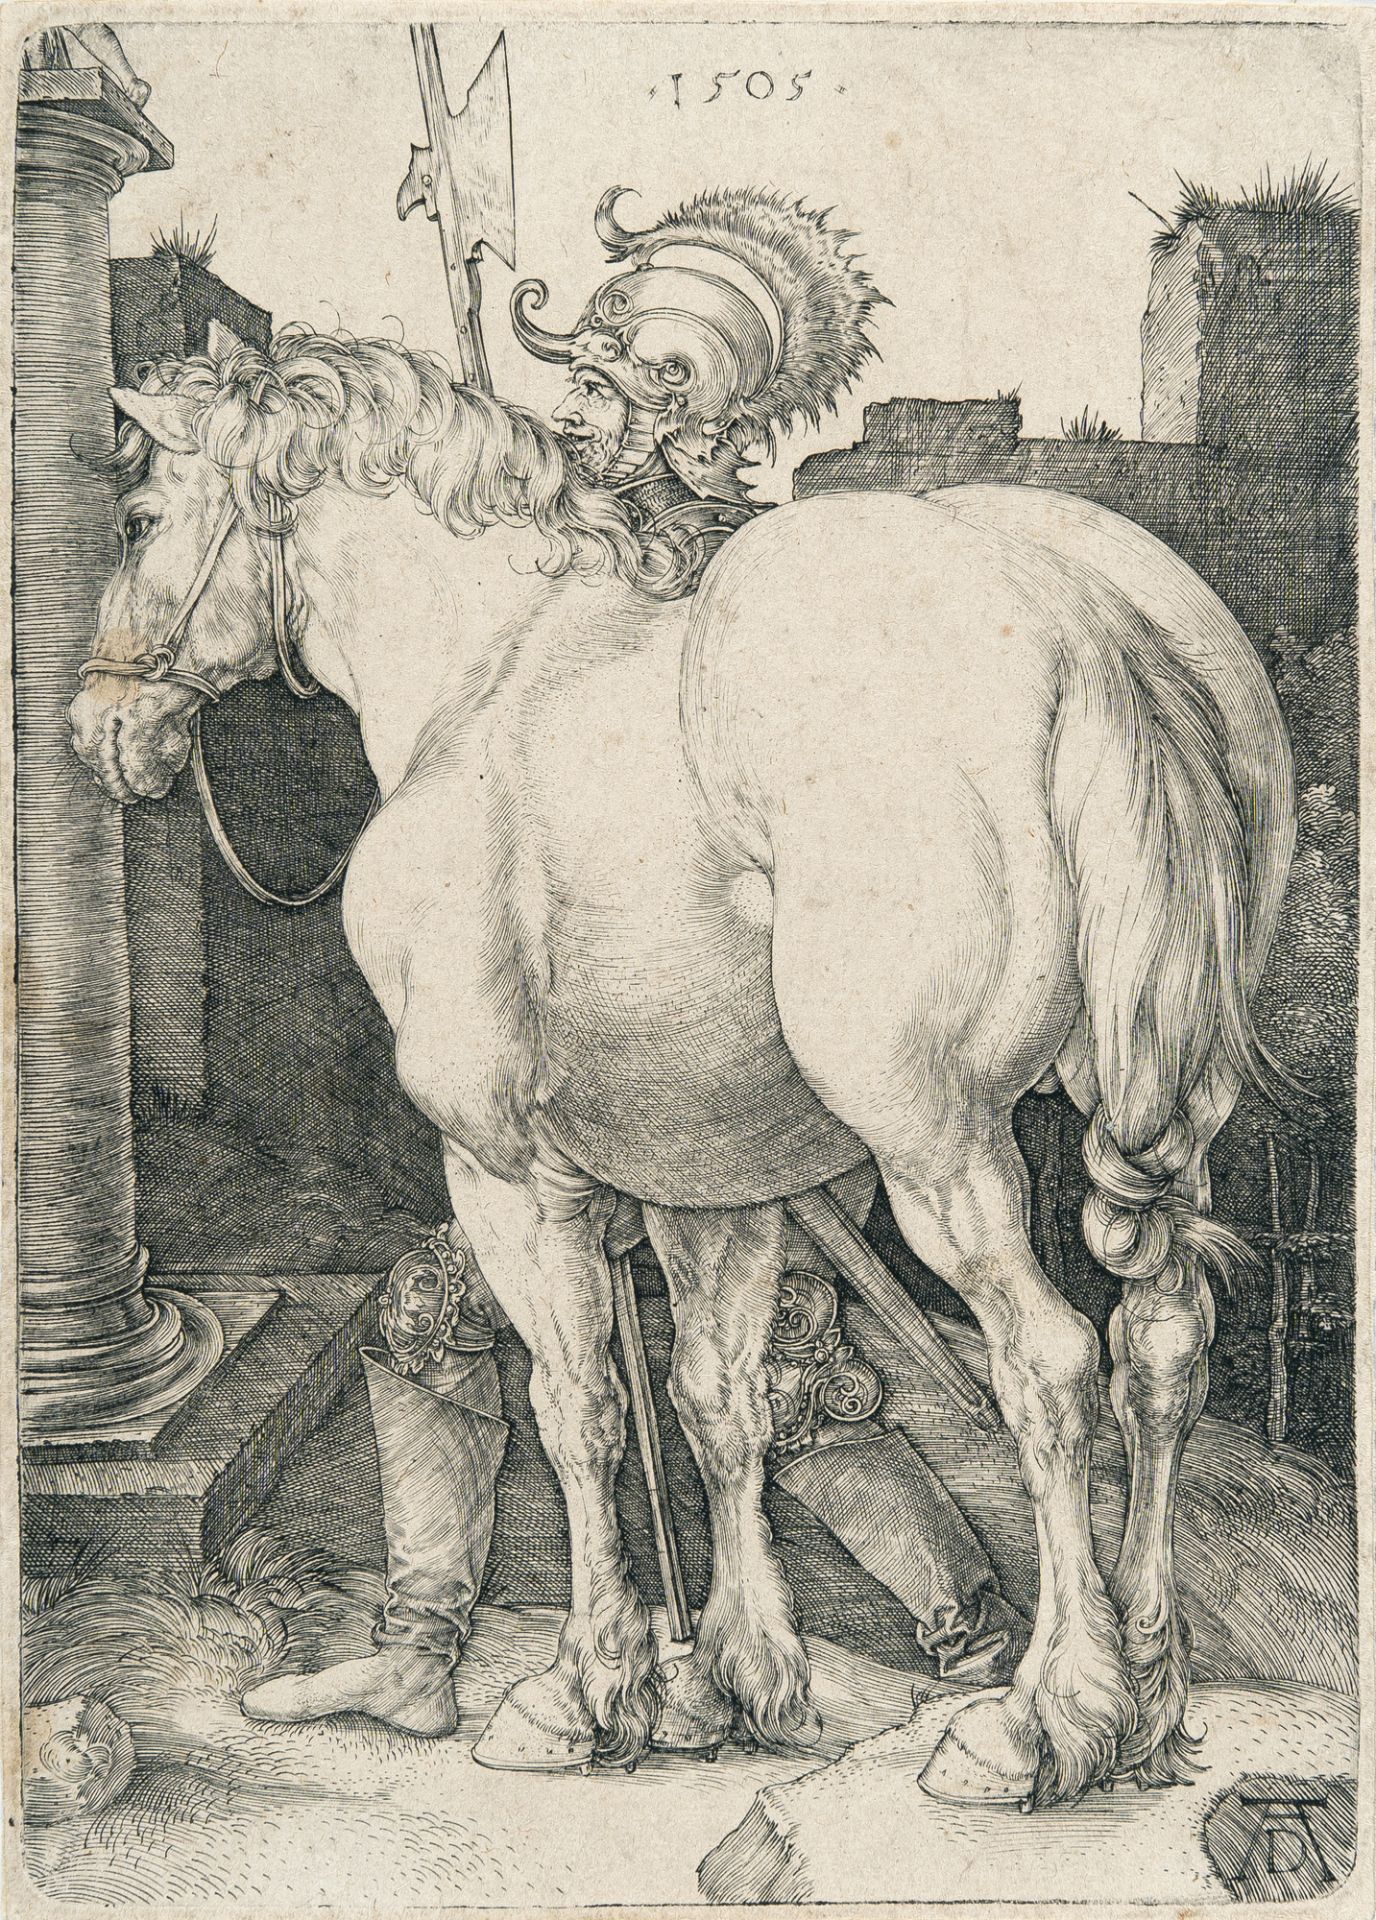 Albrecht Dürer – The large horse